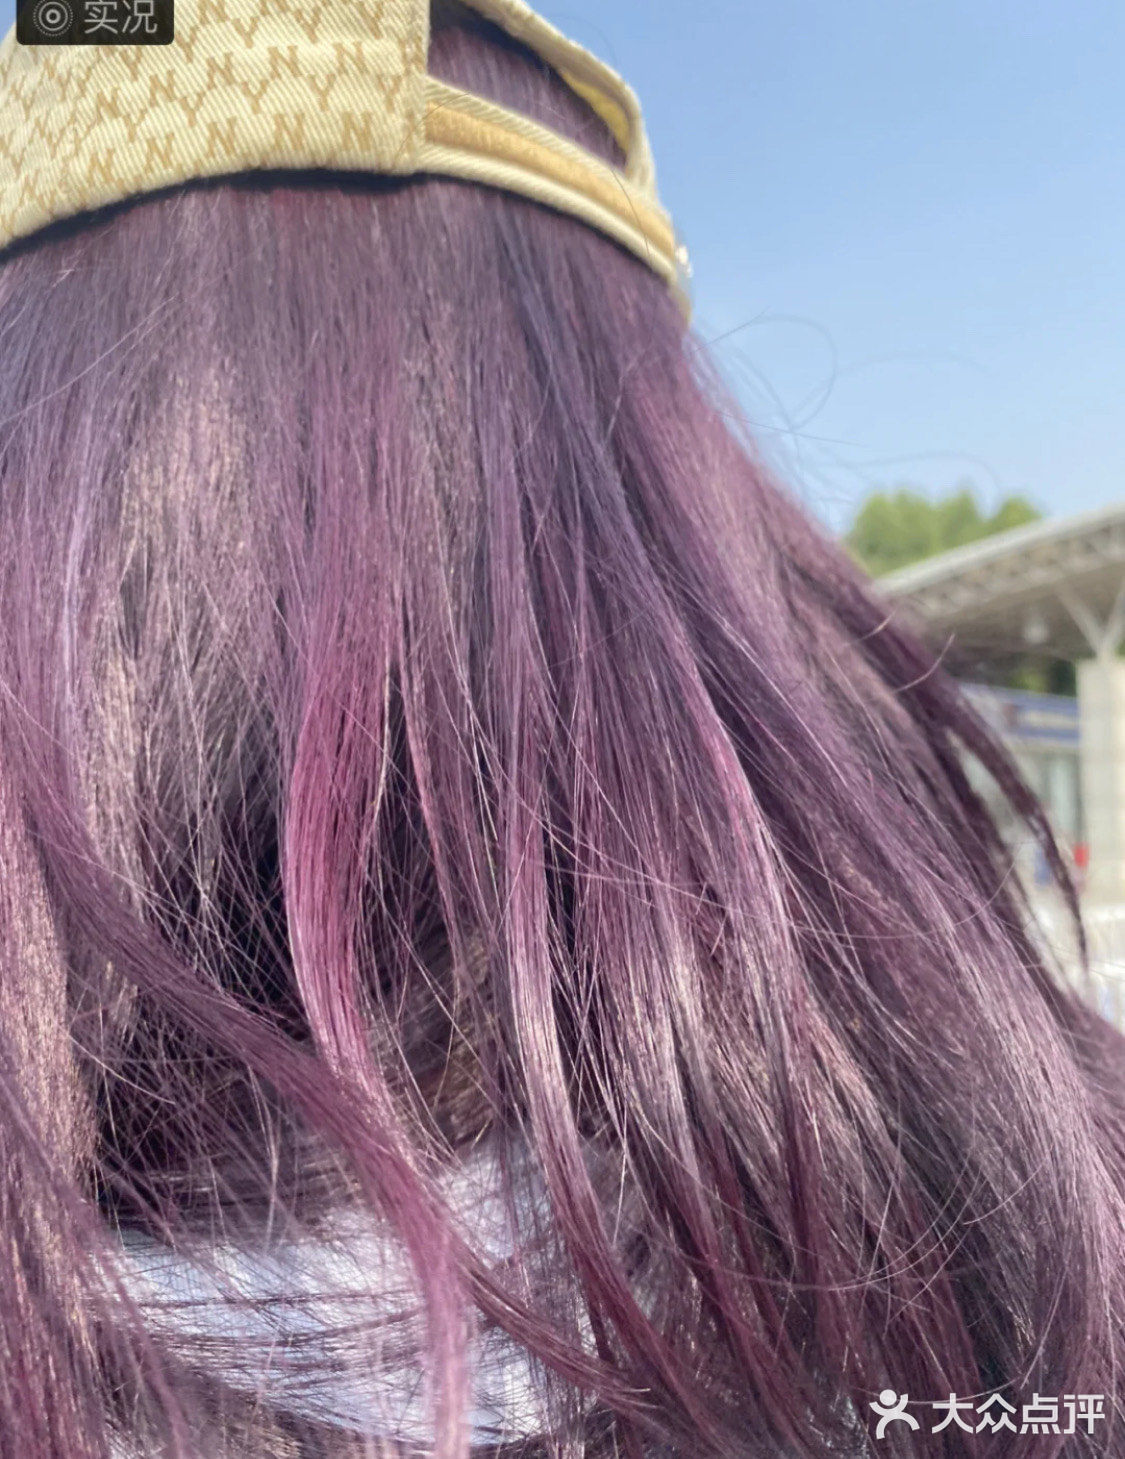 葡萄紫略黑加仑紫发色  当初是拿着喻言的图去找的tony